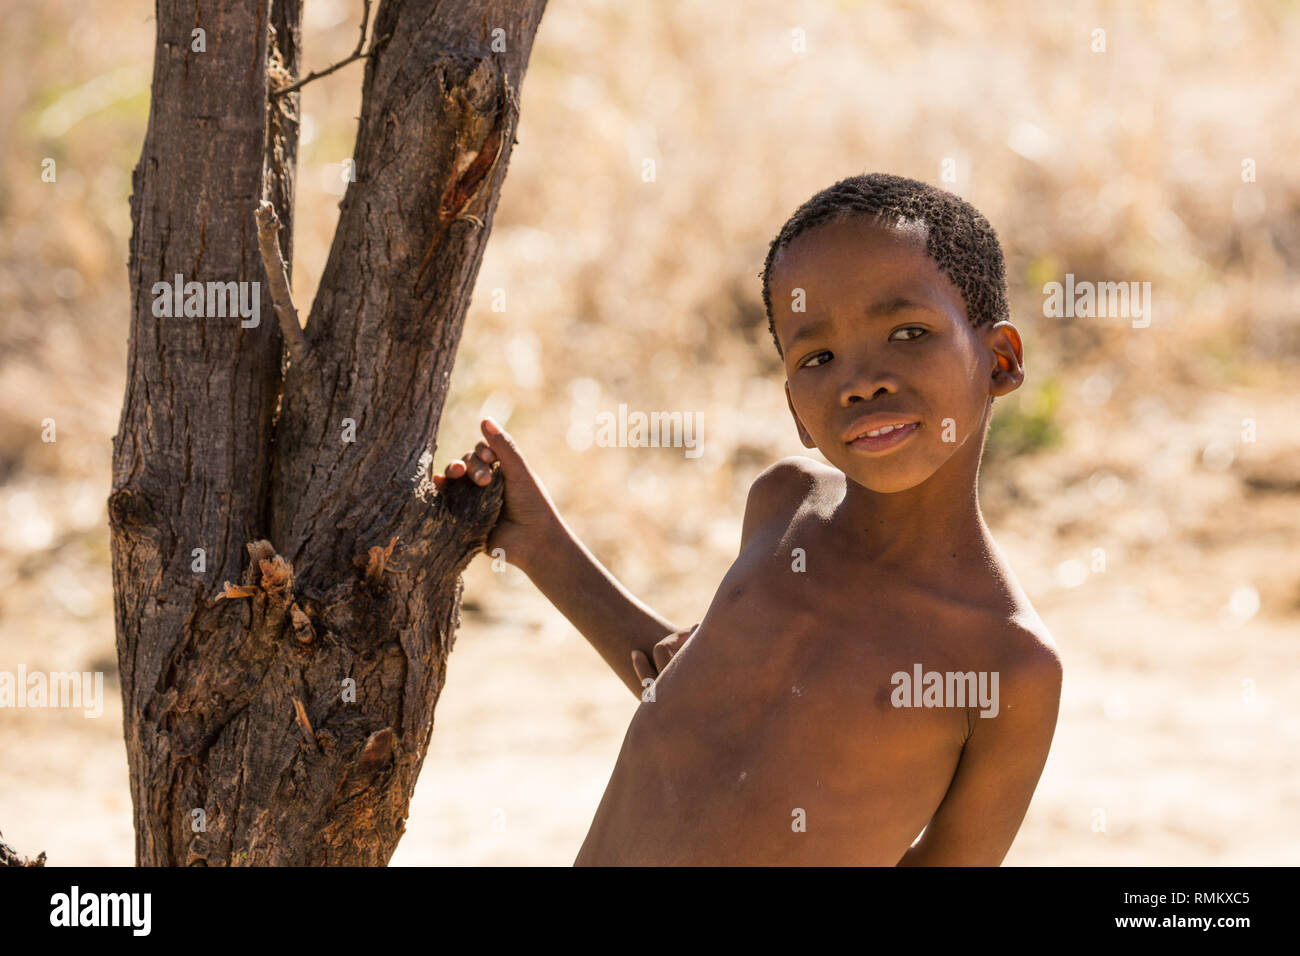 Ritratto di un bambino boscimane. Fotografato in Namibia Foto Stock